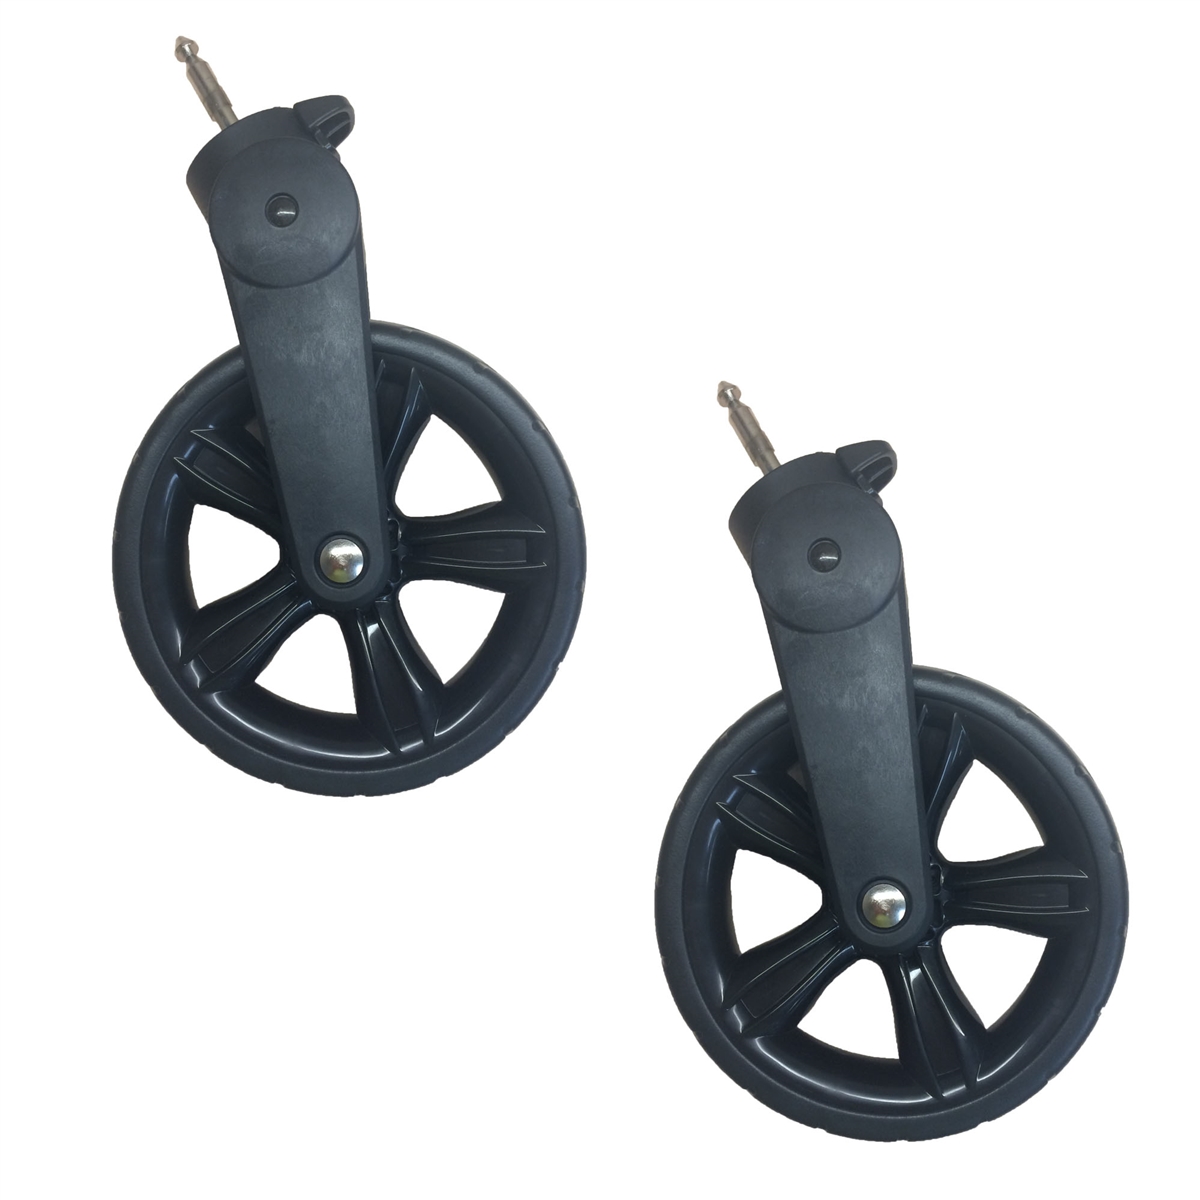 stroller wheels